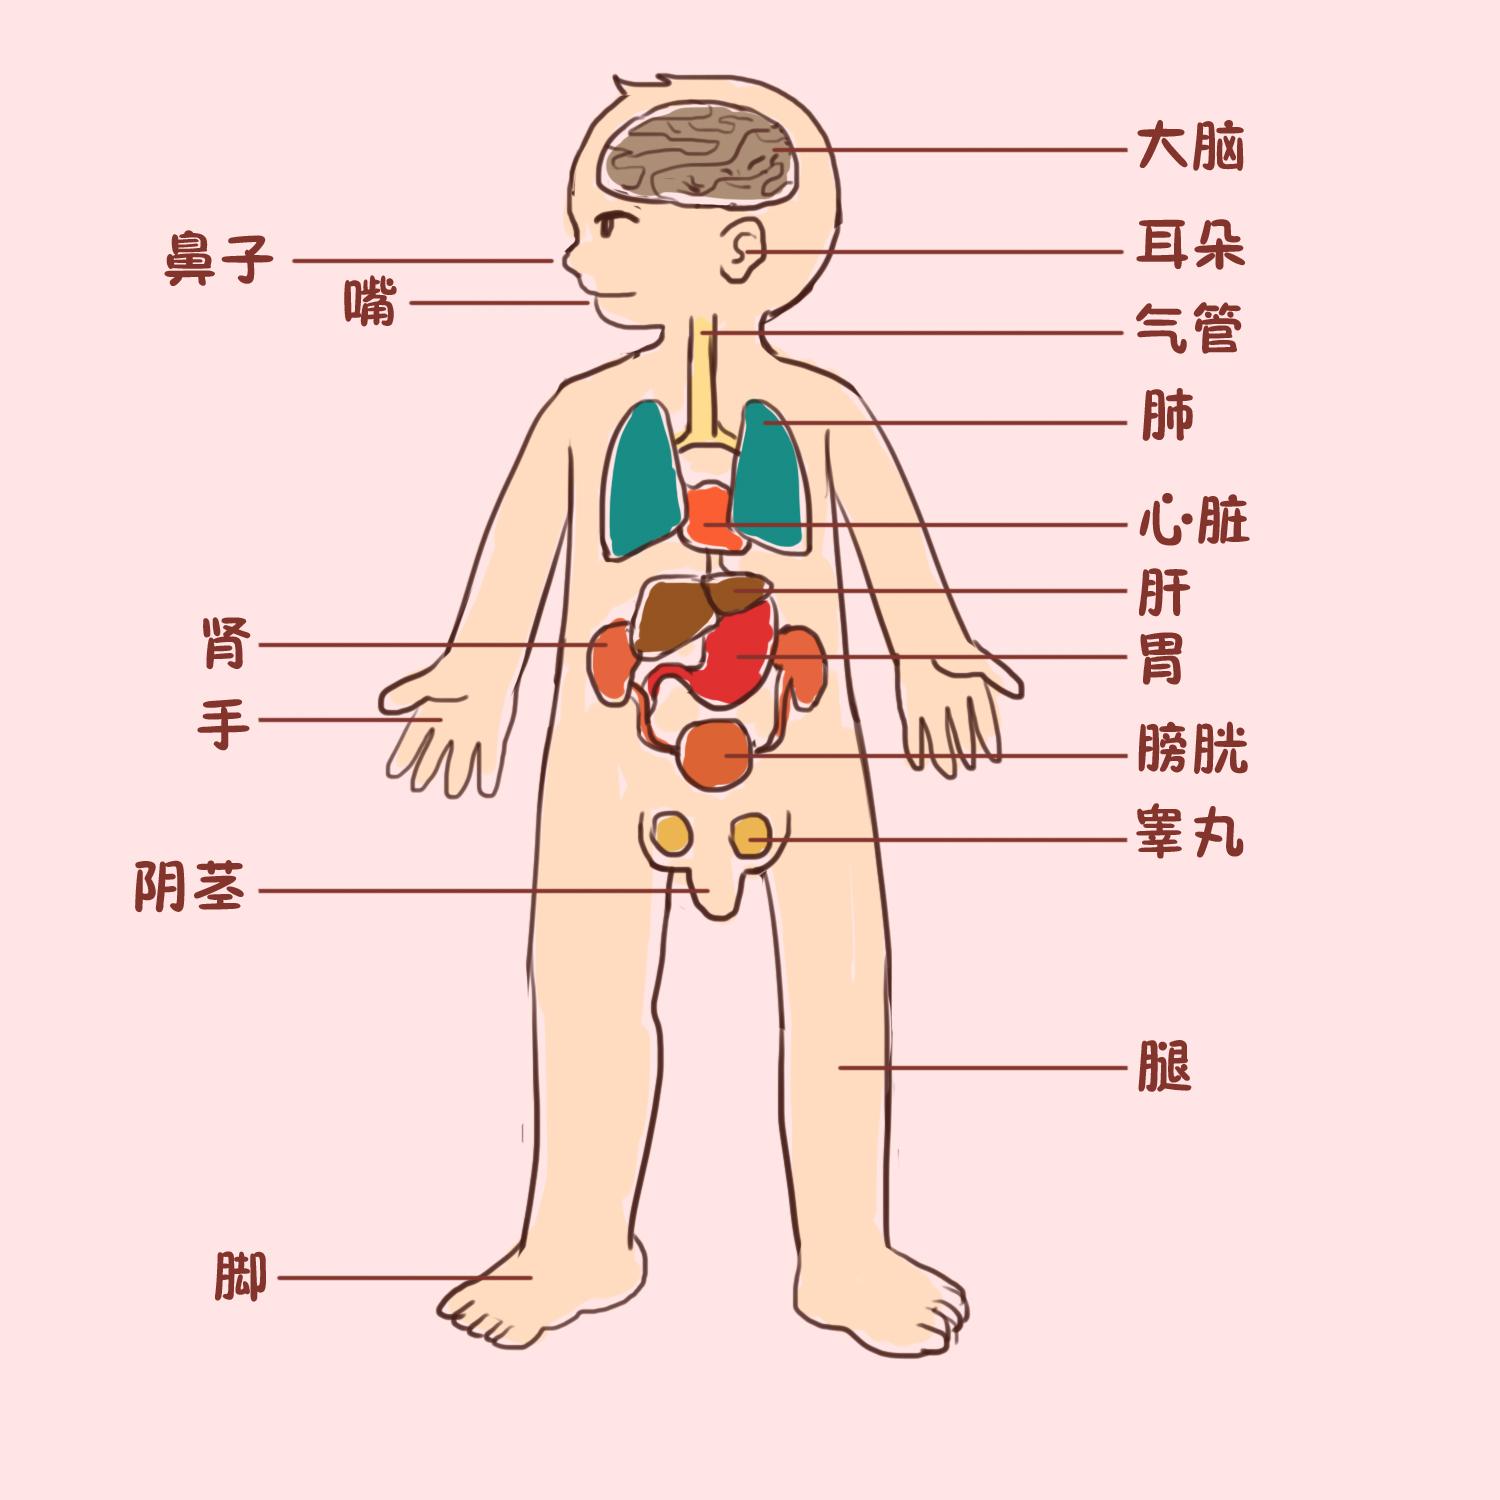 男性解剖人体器官的射线视图图片下载 - 觅知网